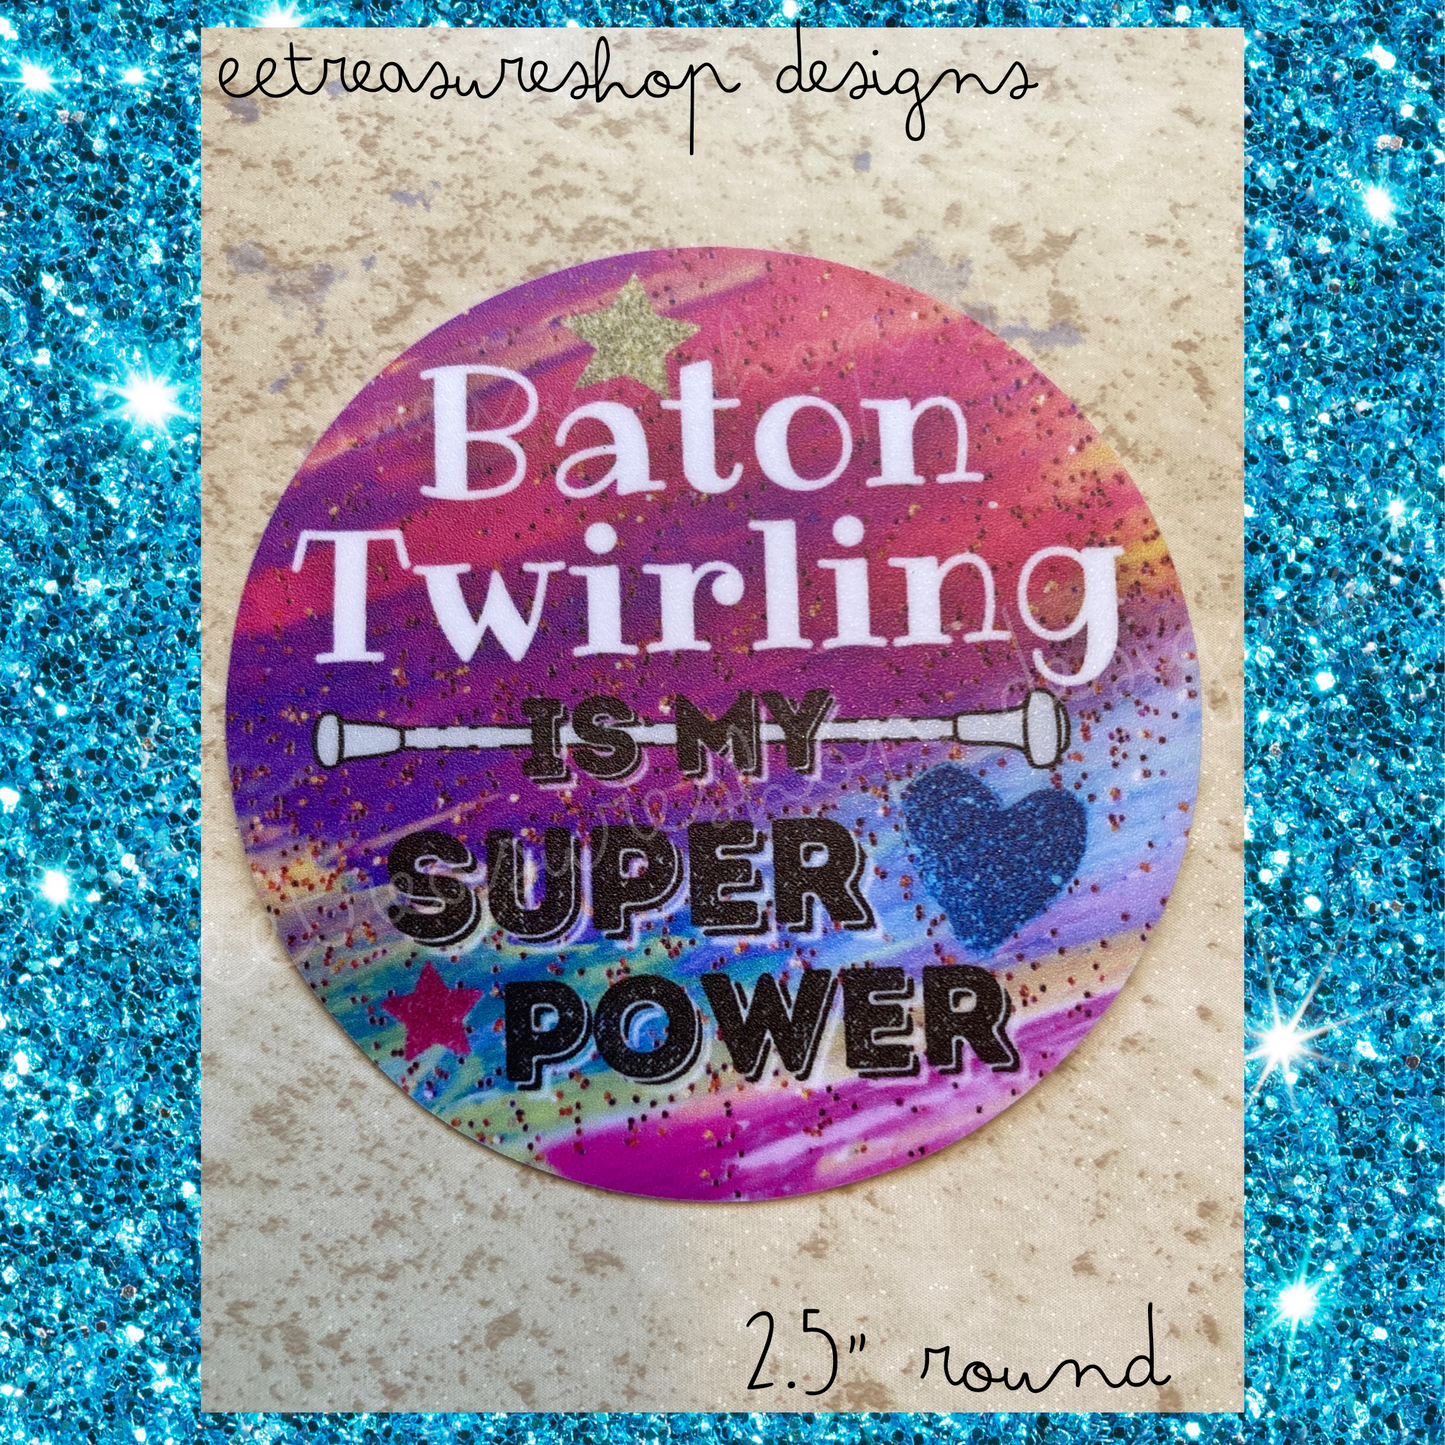 Baton Twirling Super Power Waterproof Vinyl Sticker